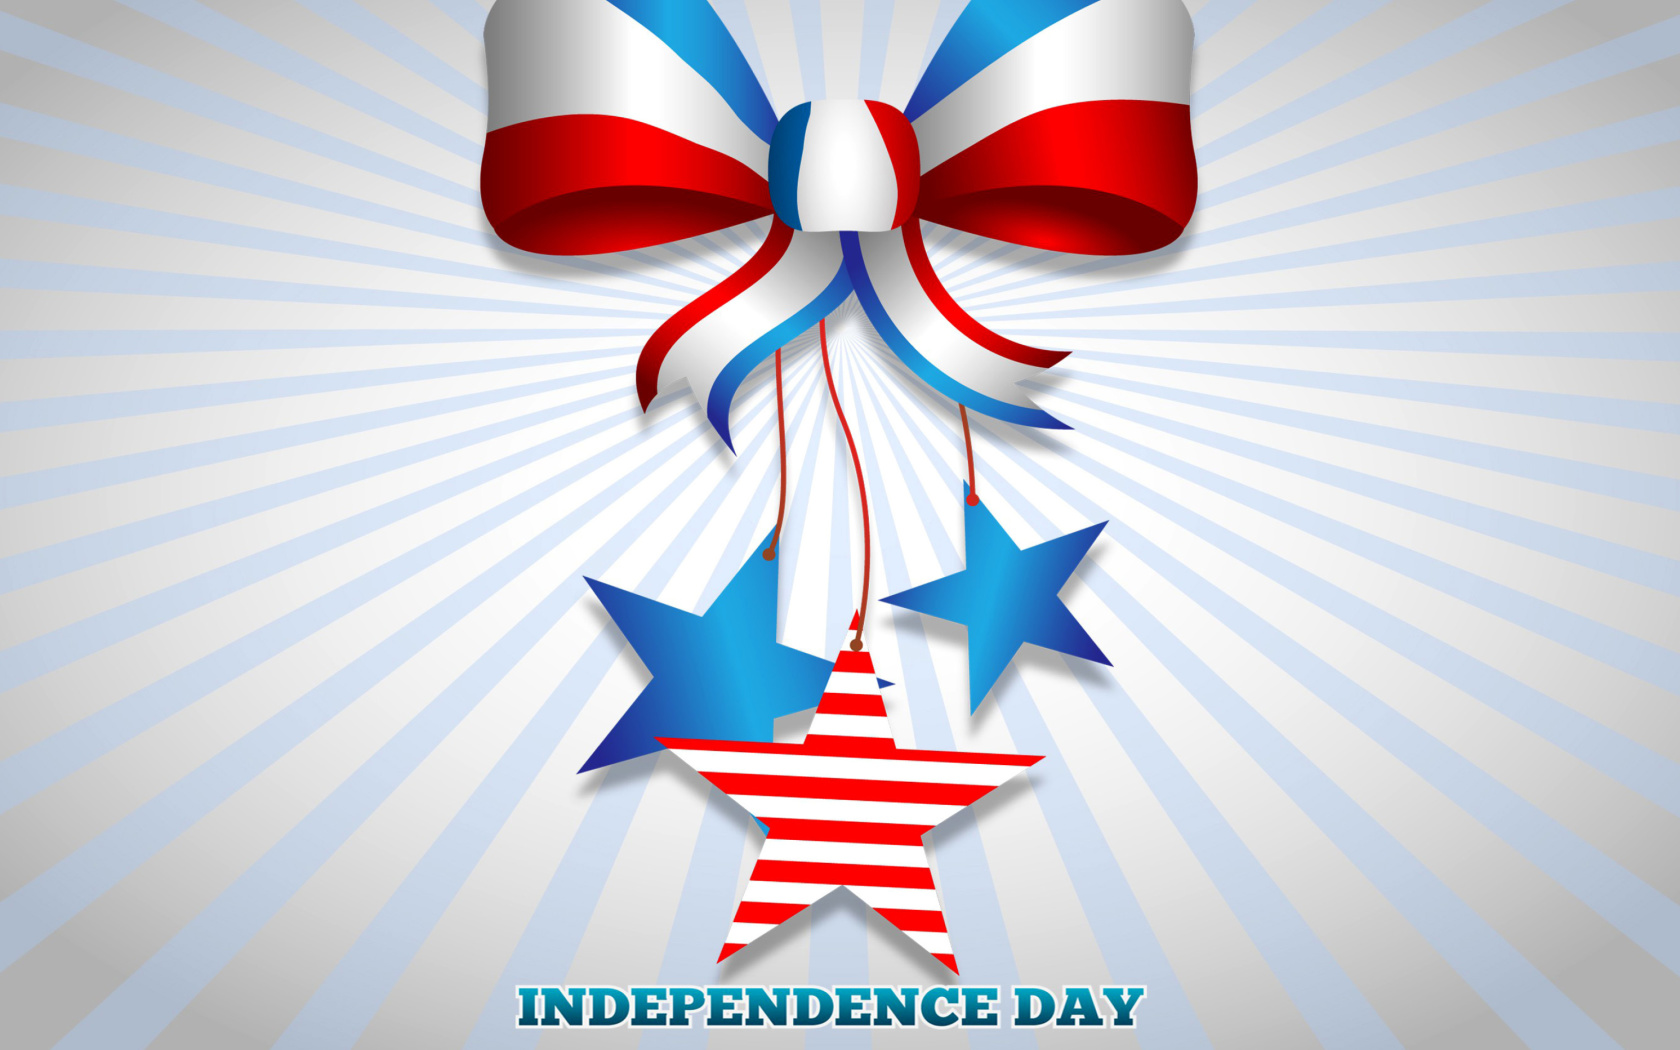 Sfondi United states america Idependence day 4th july 1680x1050